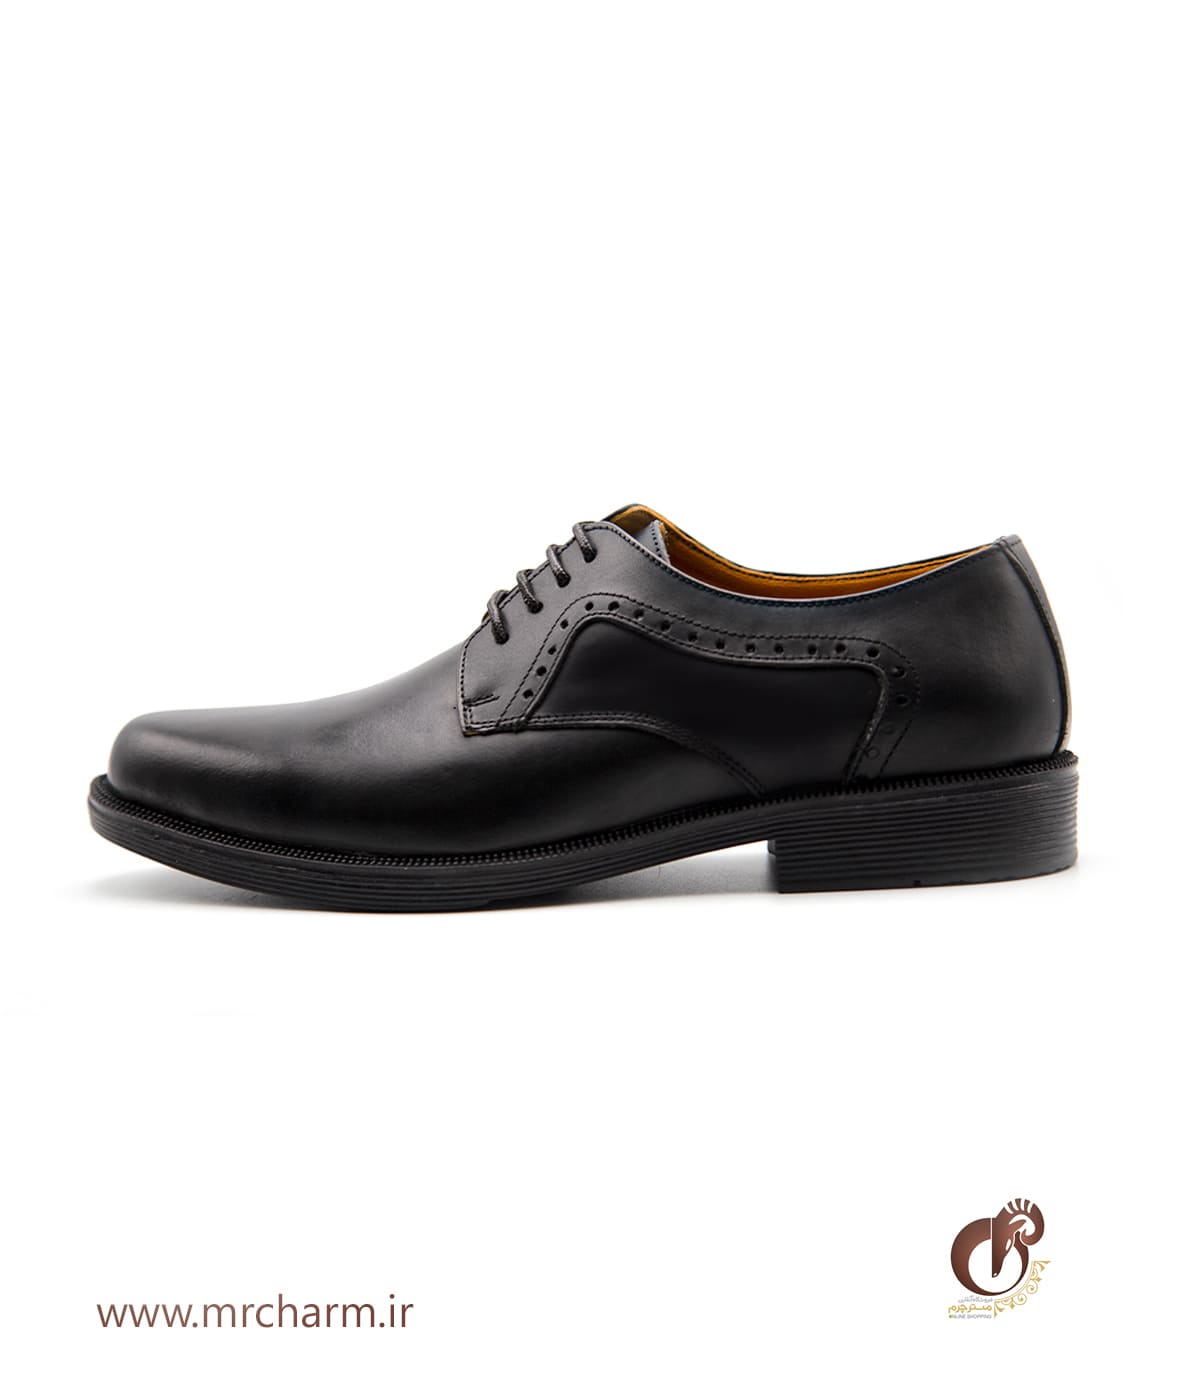 کفش چرم رسمی مردانه MRC10528